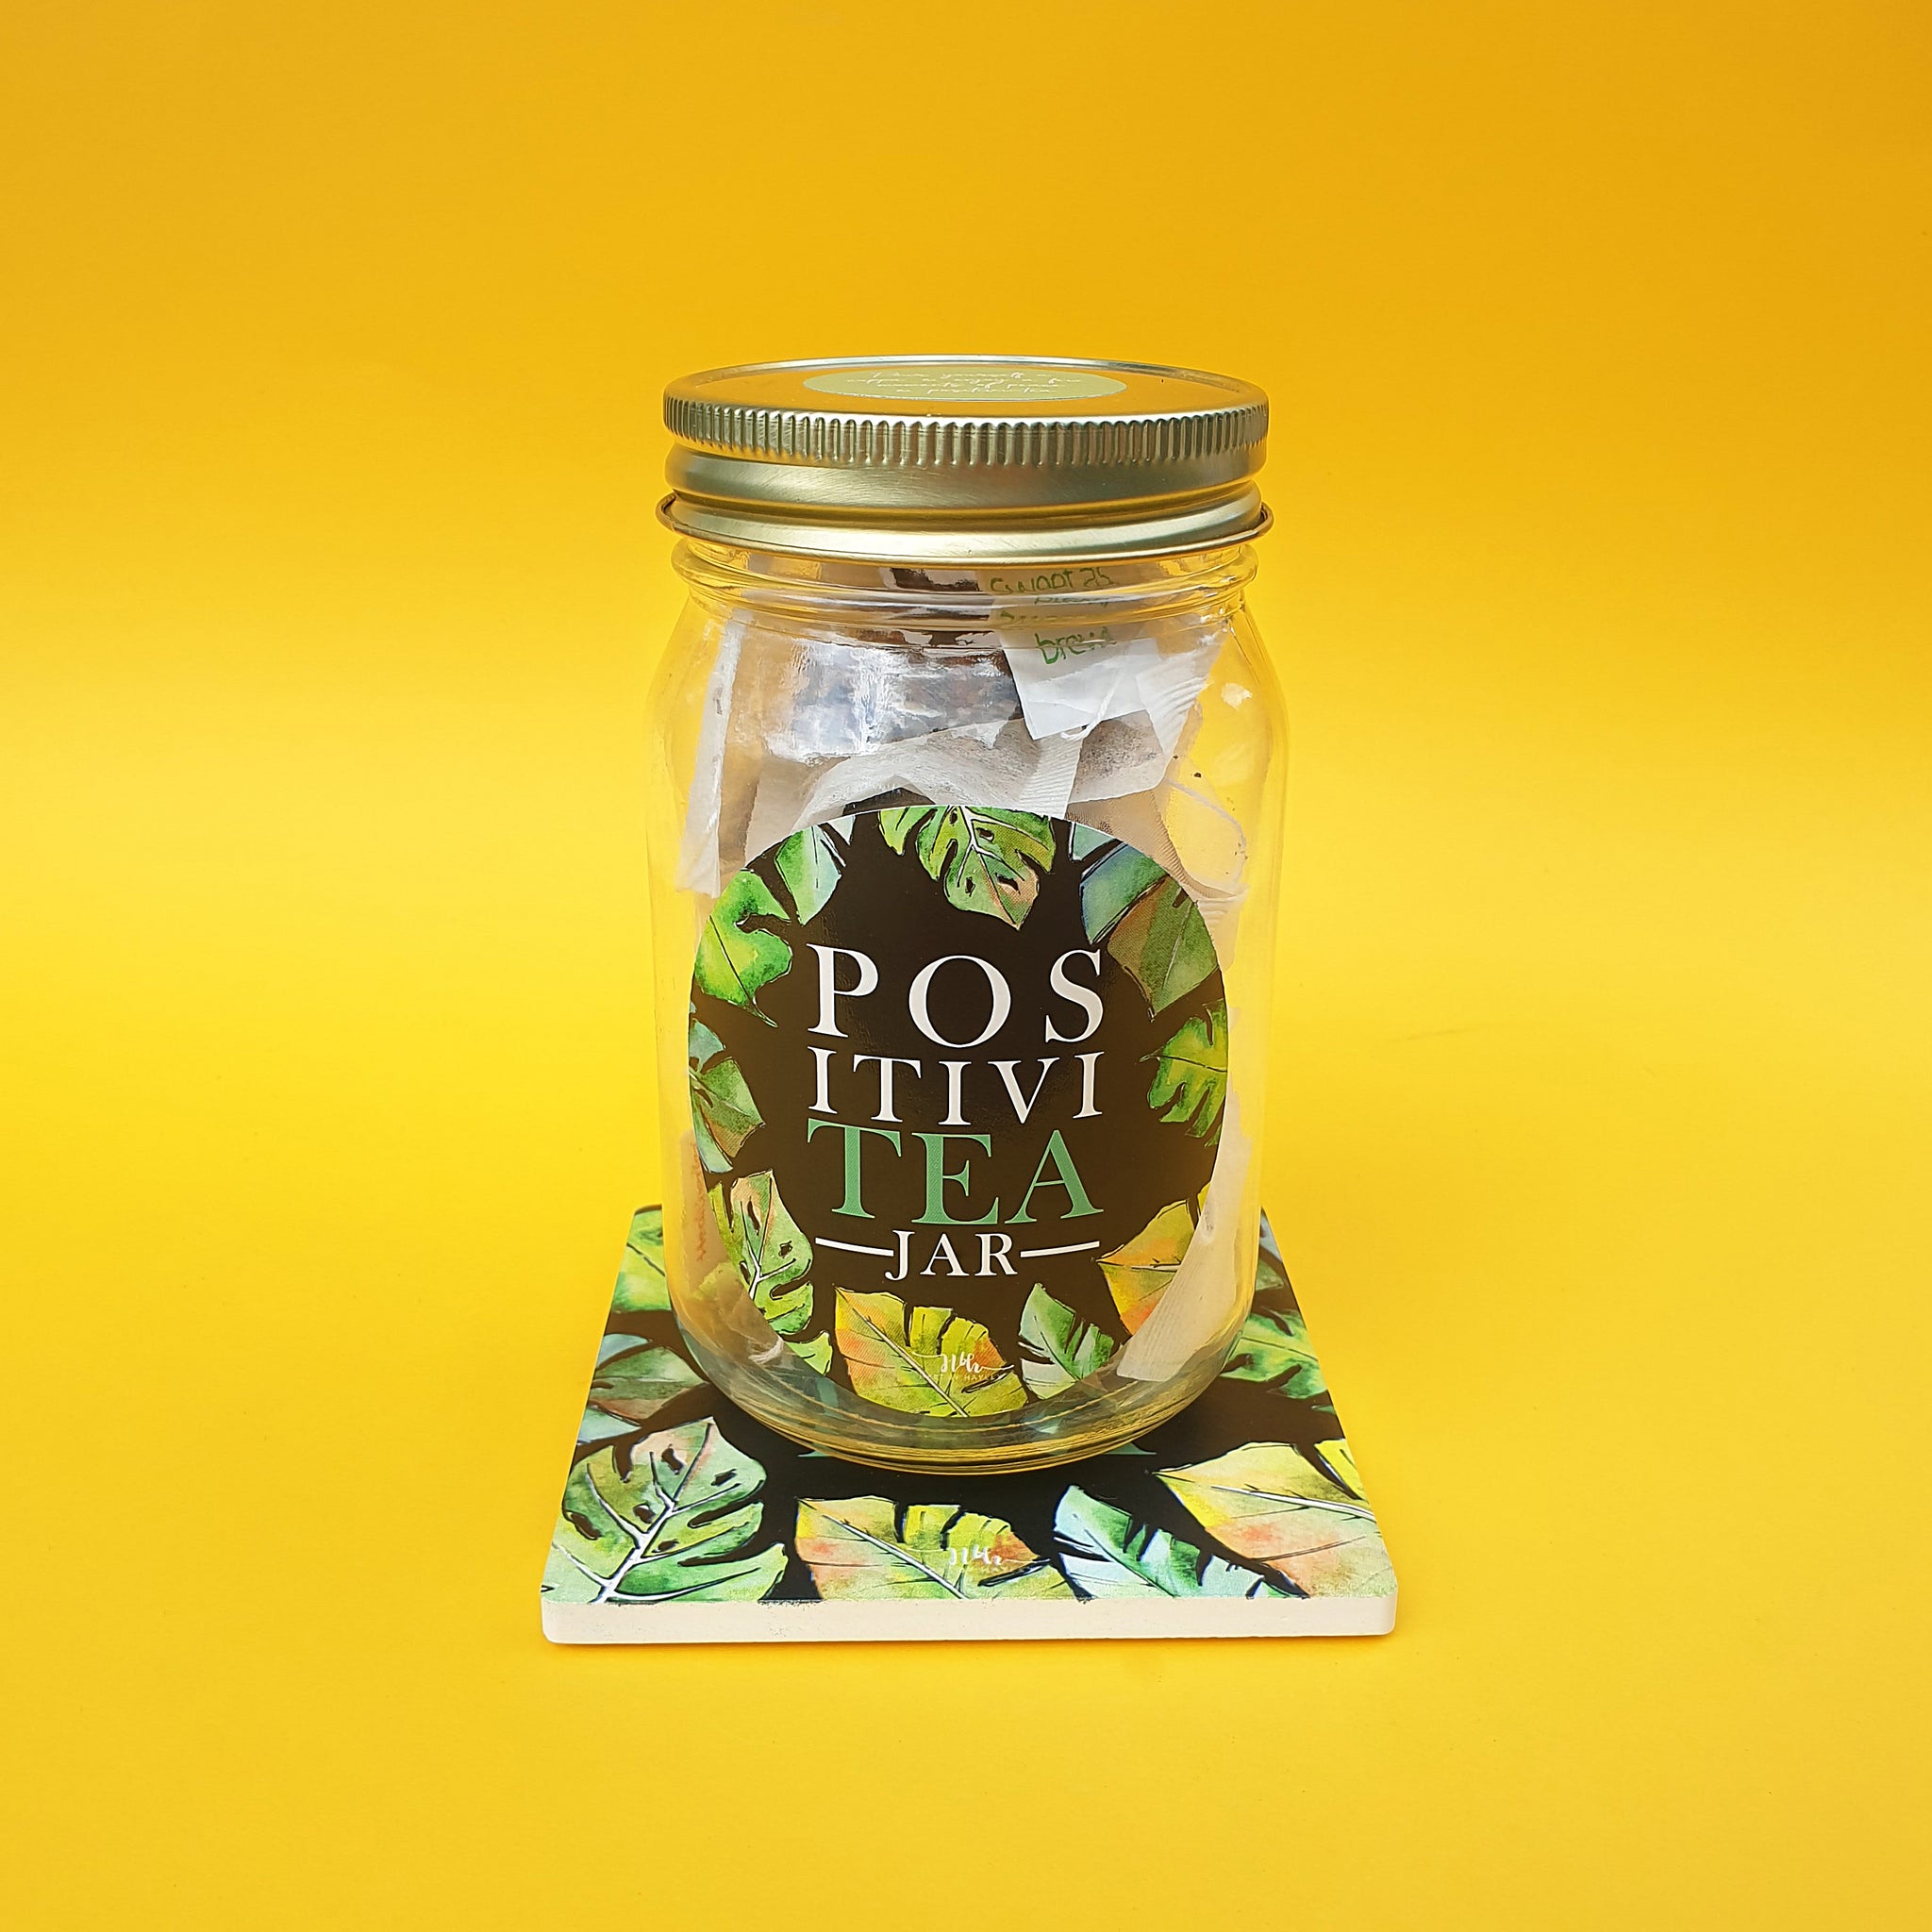 LUCKY DIP tea filled "PositiviTEA" jar with ceramic coaster